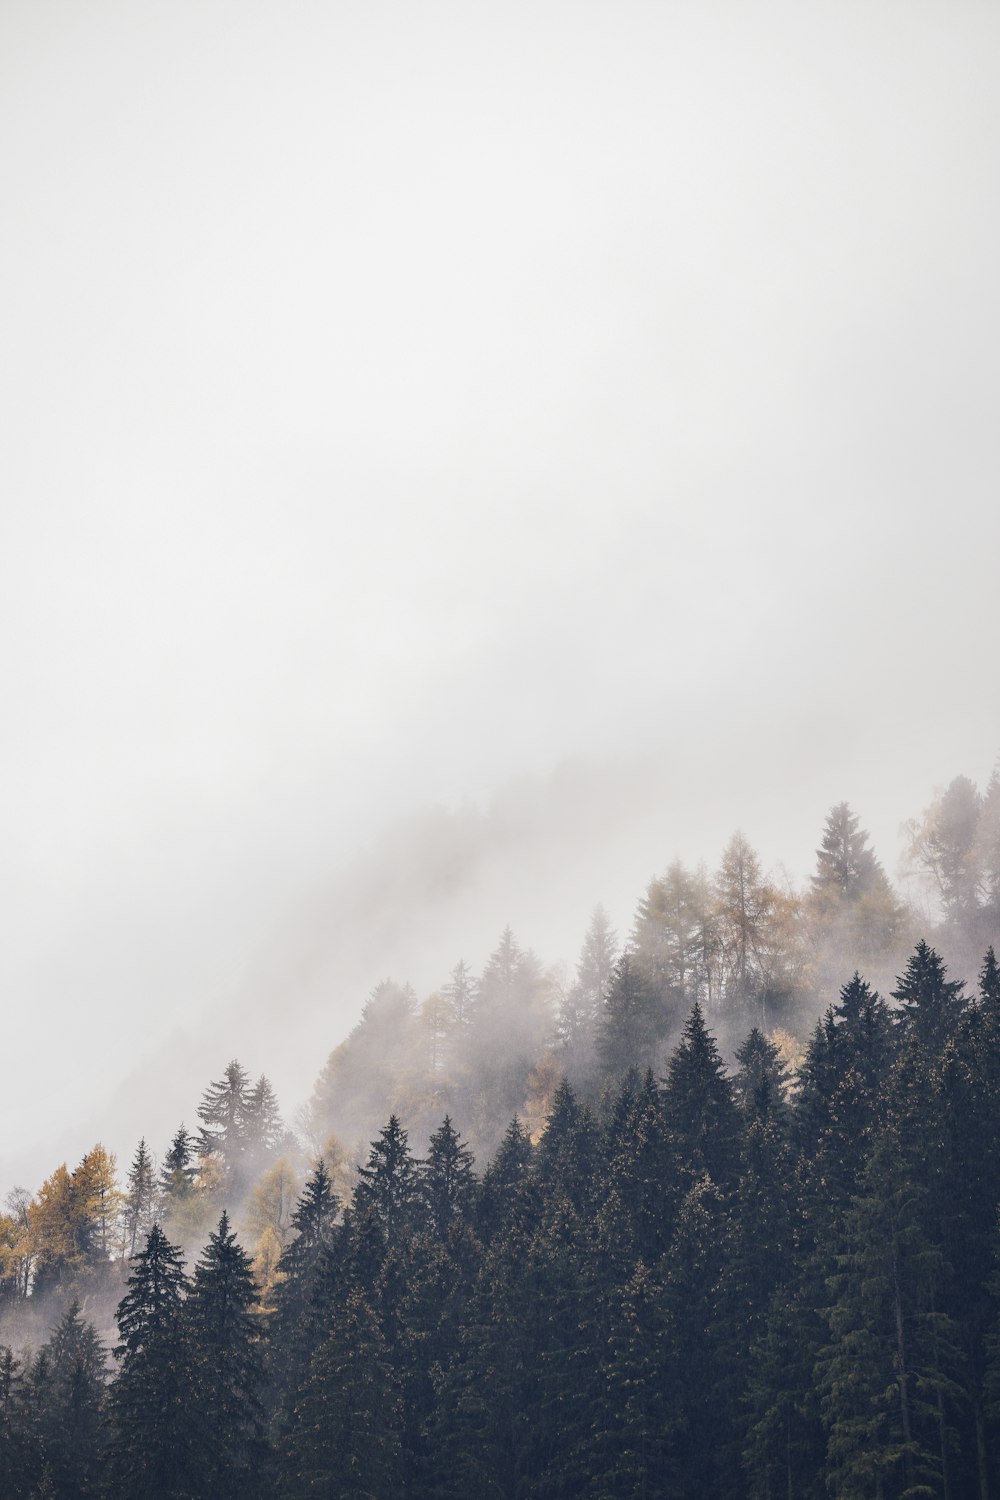 Berg mit hohen Bäumen, die in Nebel gehüllt sind